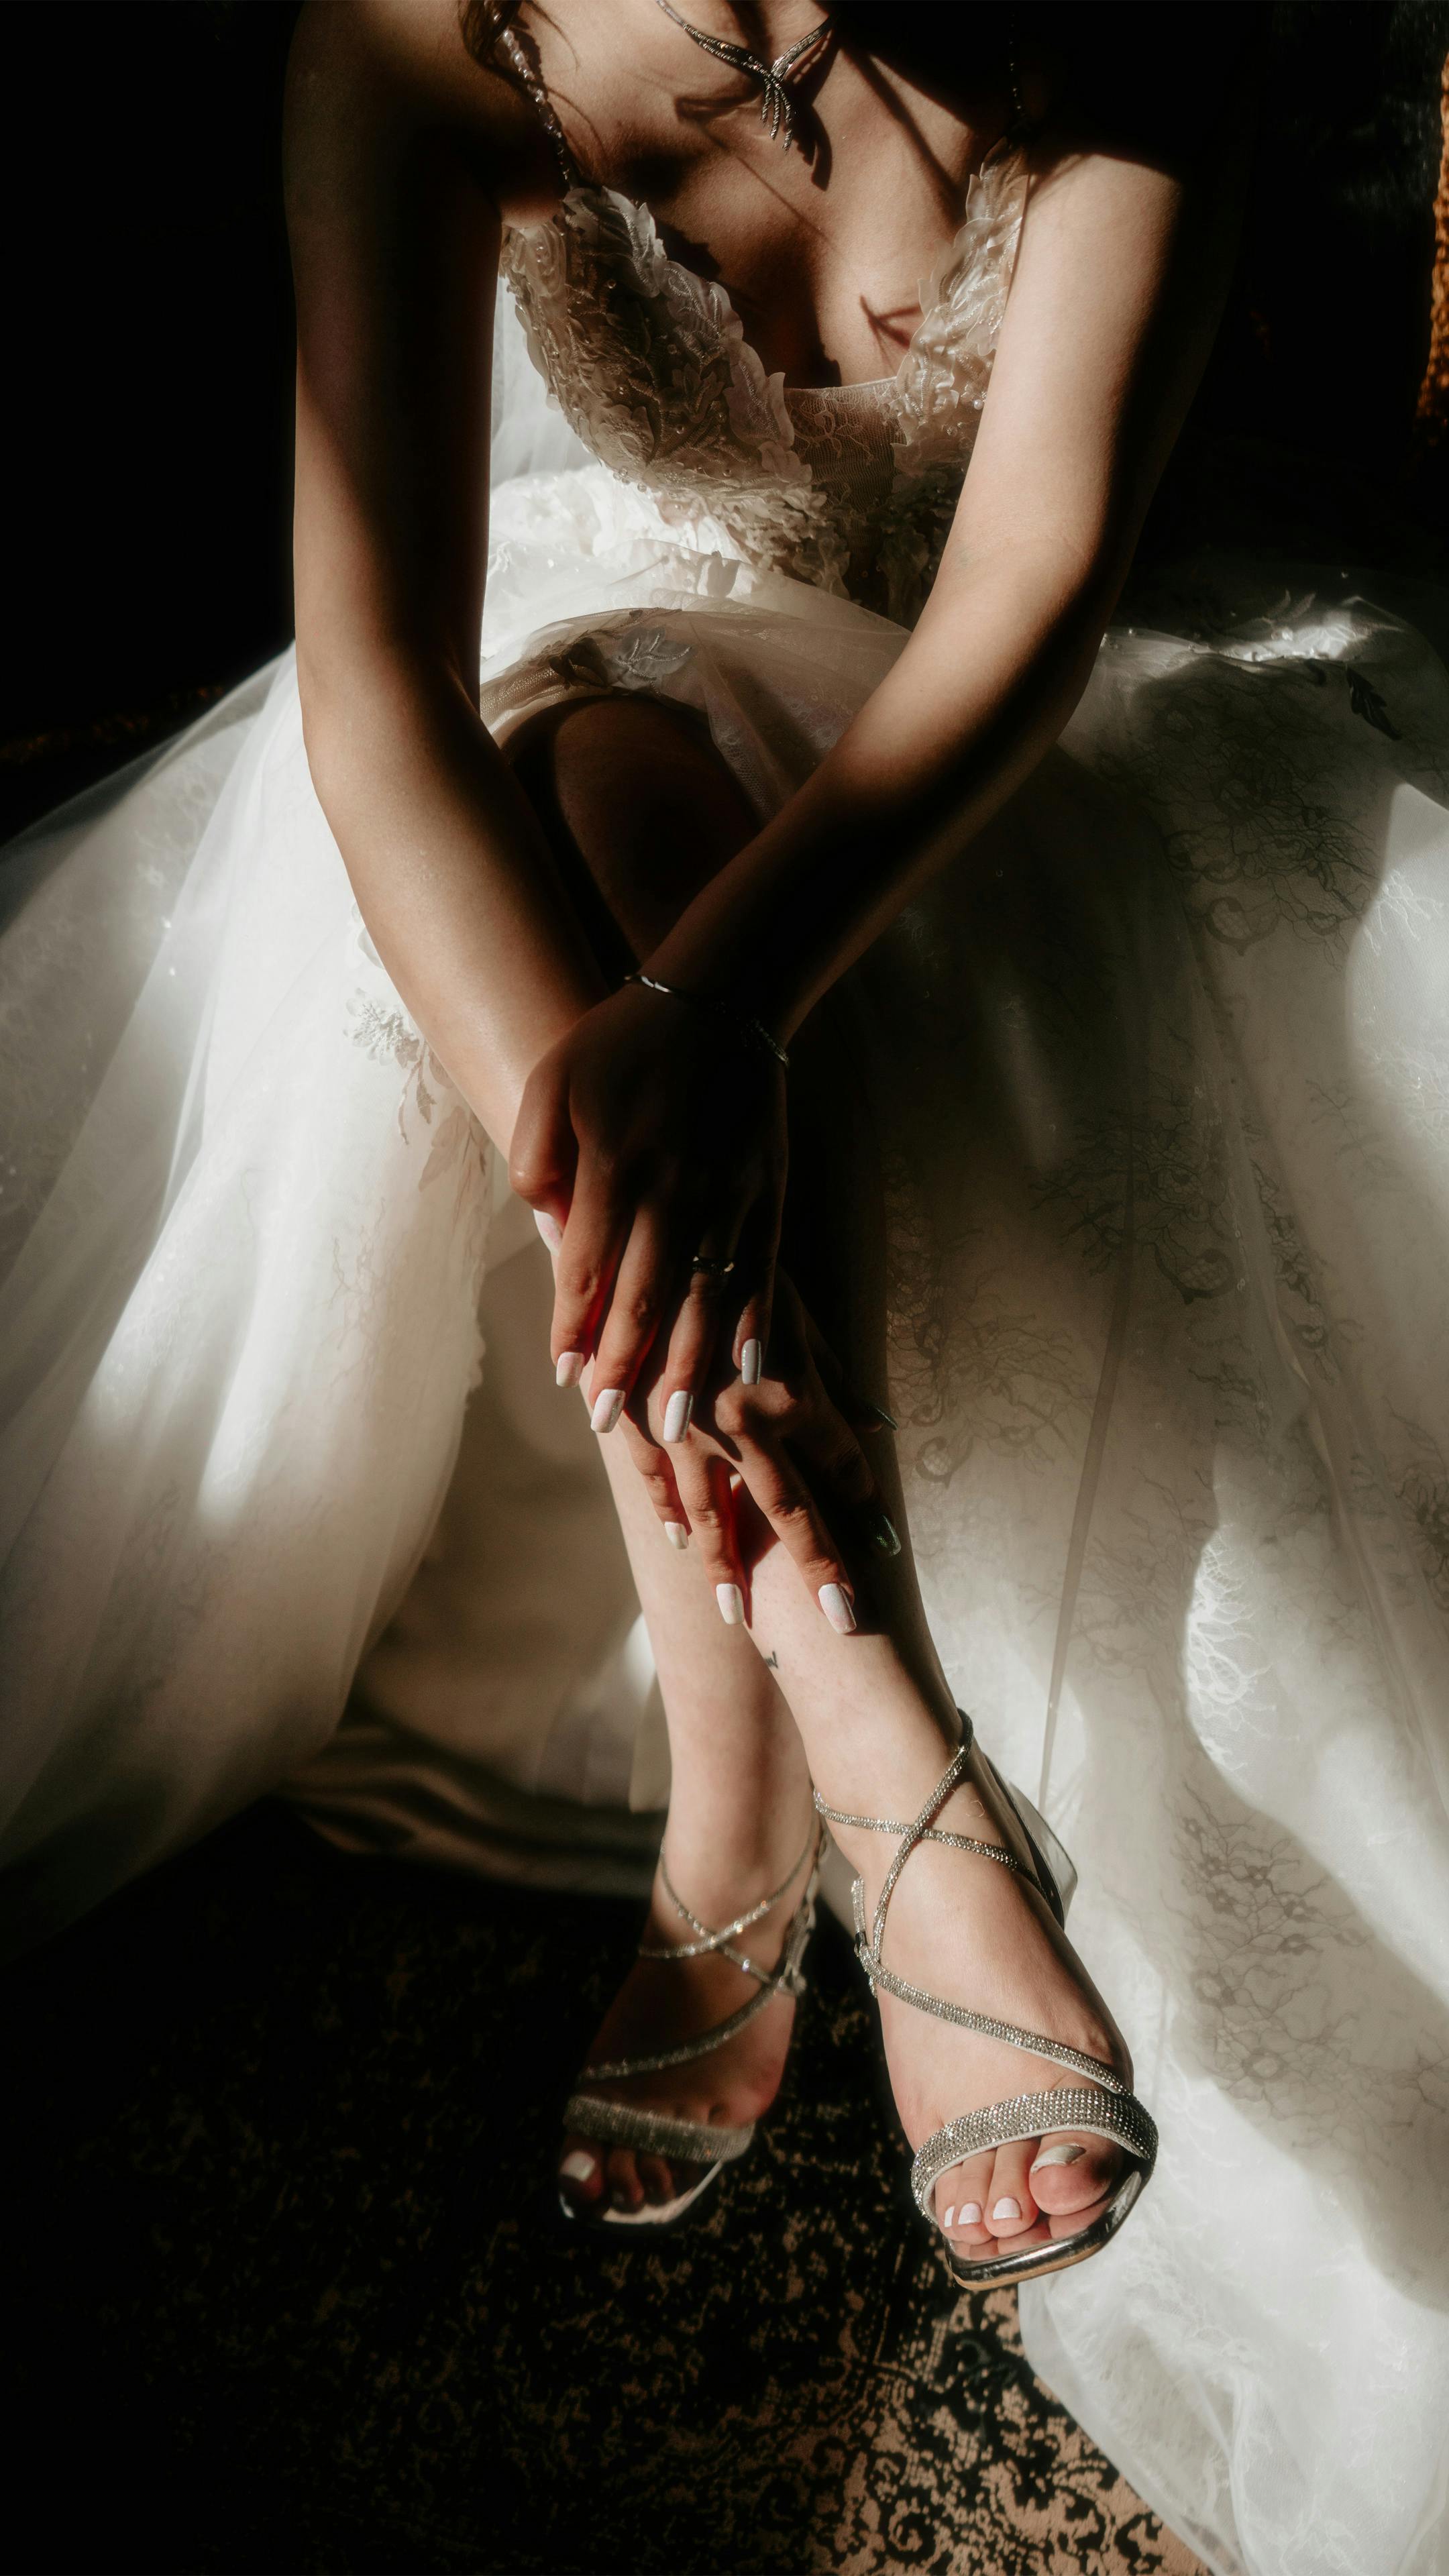 Una mujer vestida de novia | Fuente: Pexels